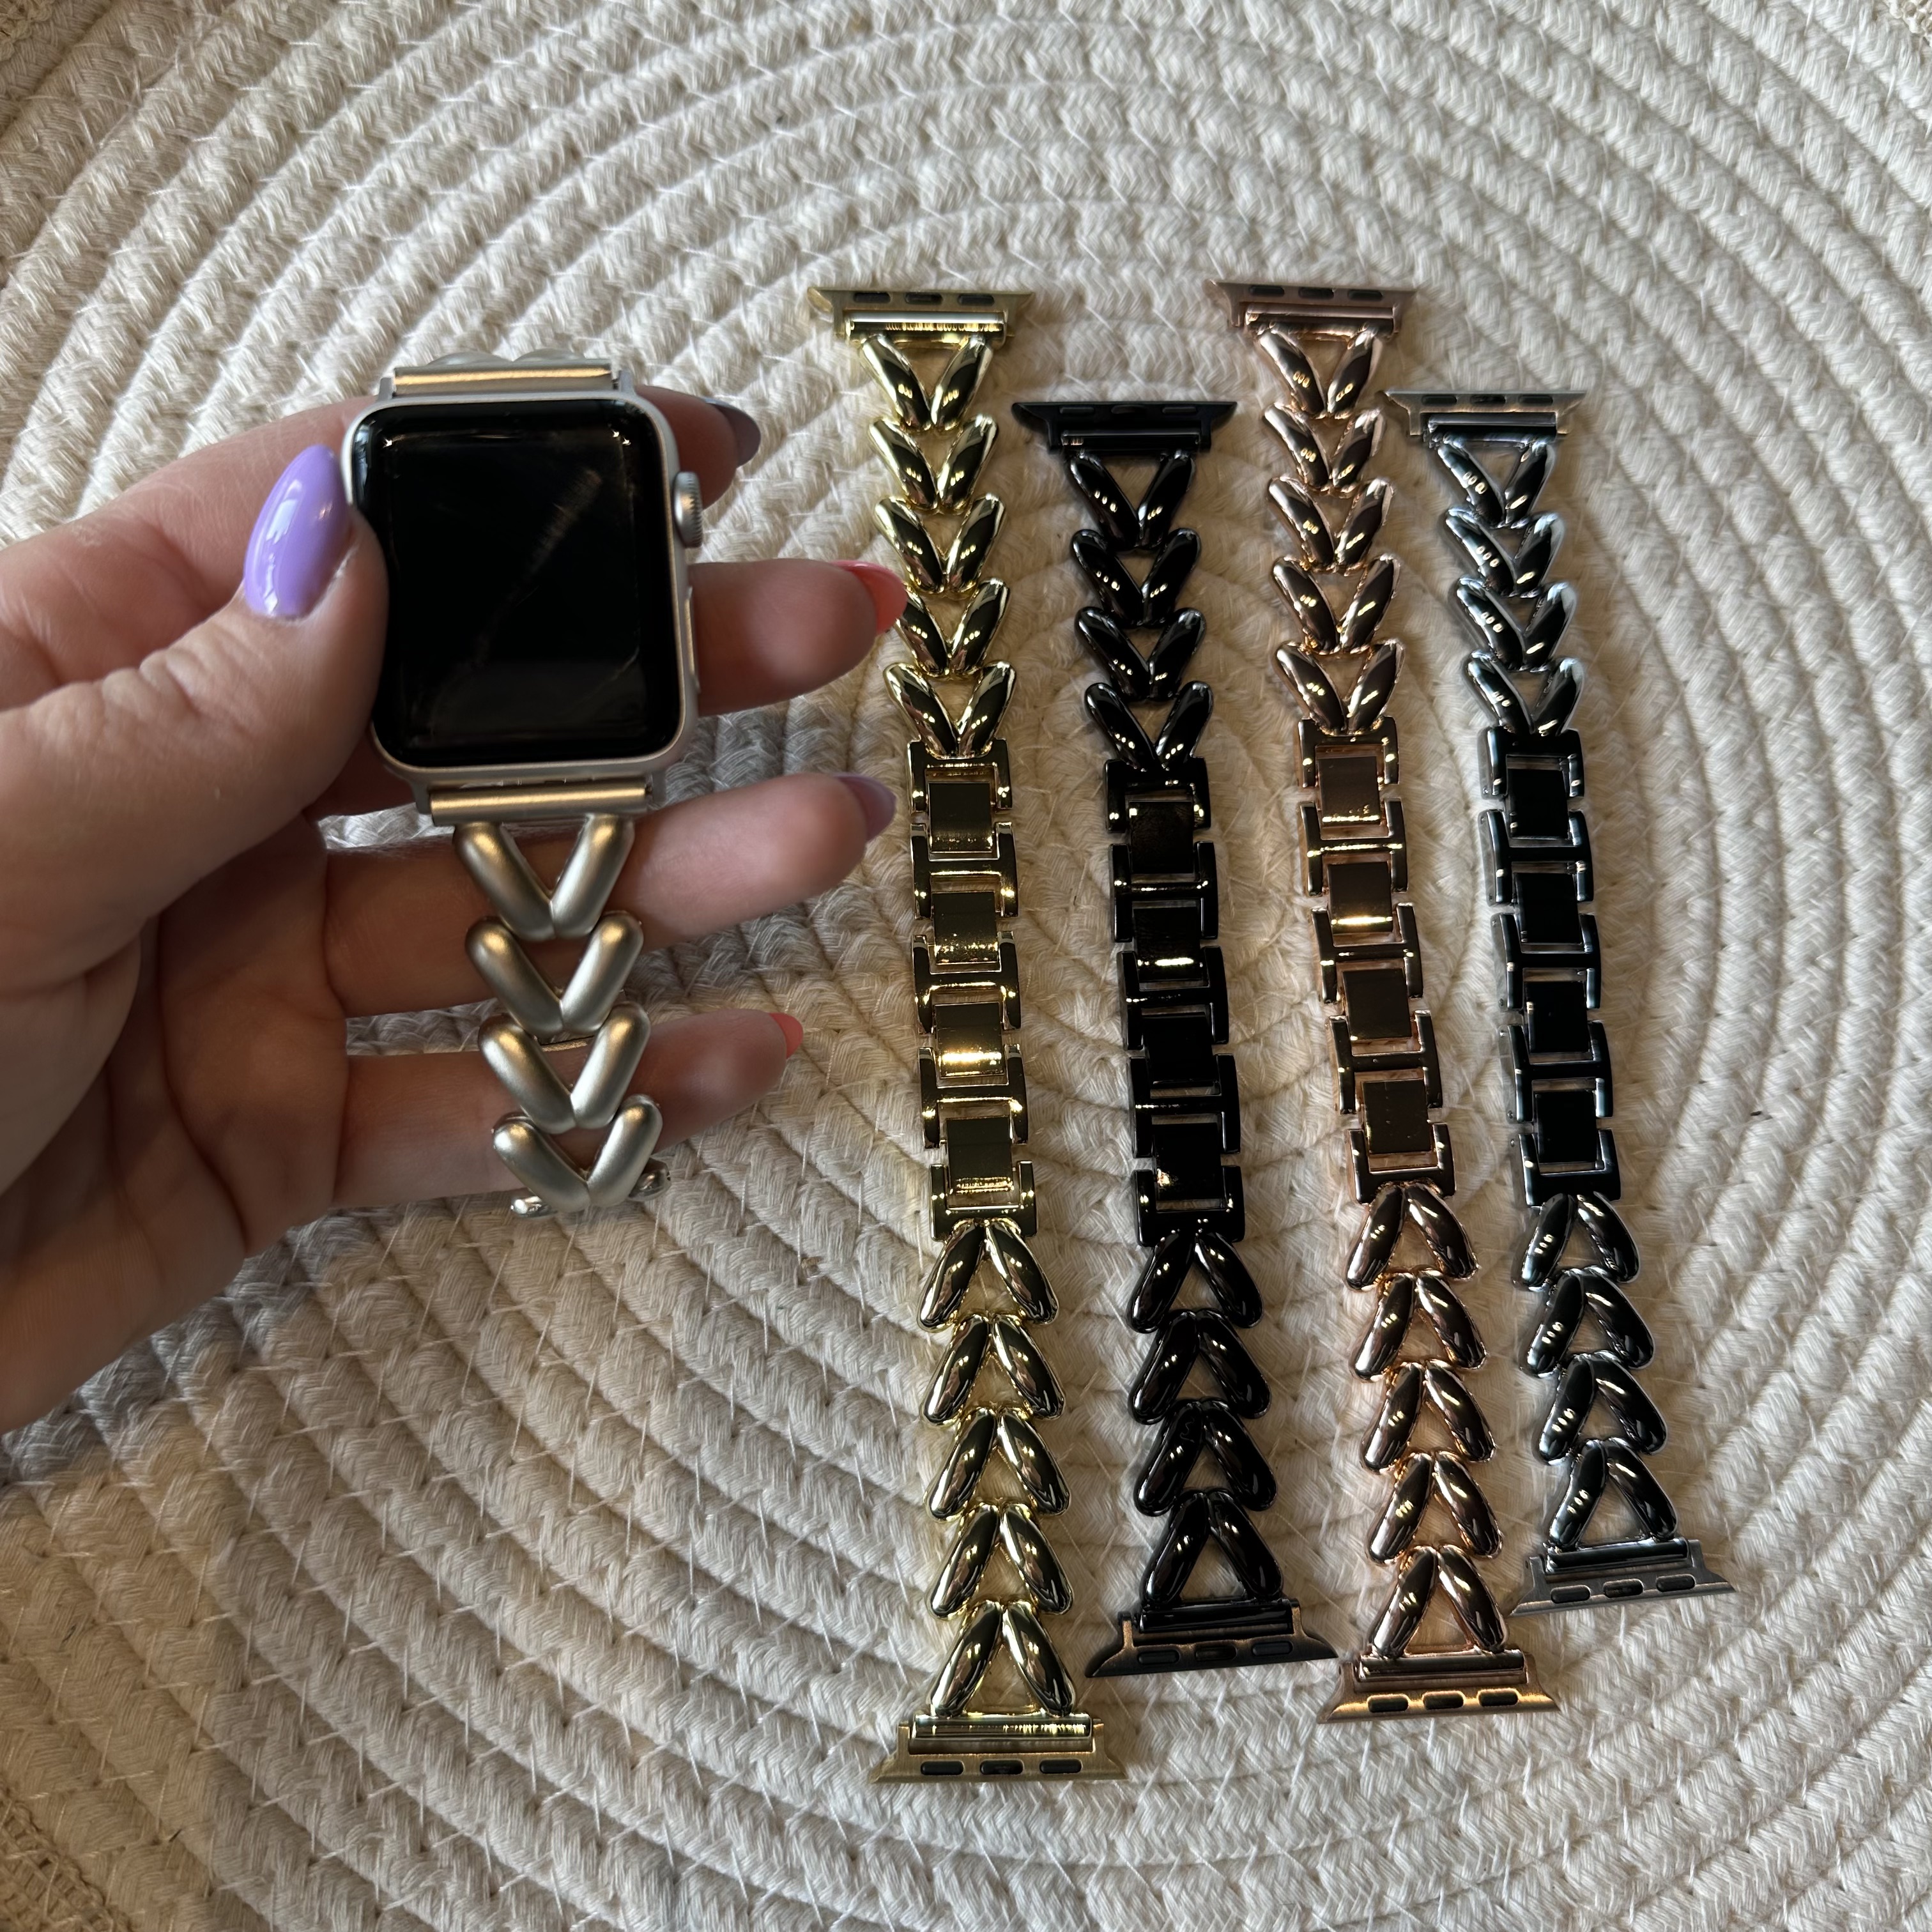 Correa de eslabones de acero con forma de corazón para Apple Watch - Lisa oro